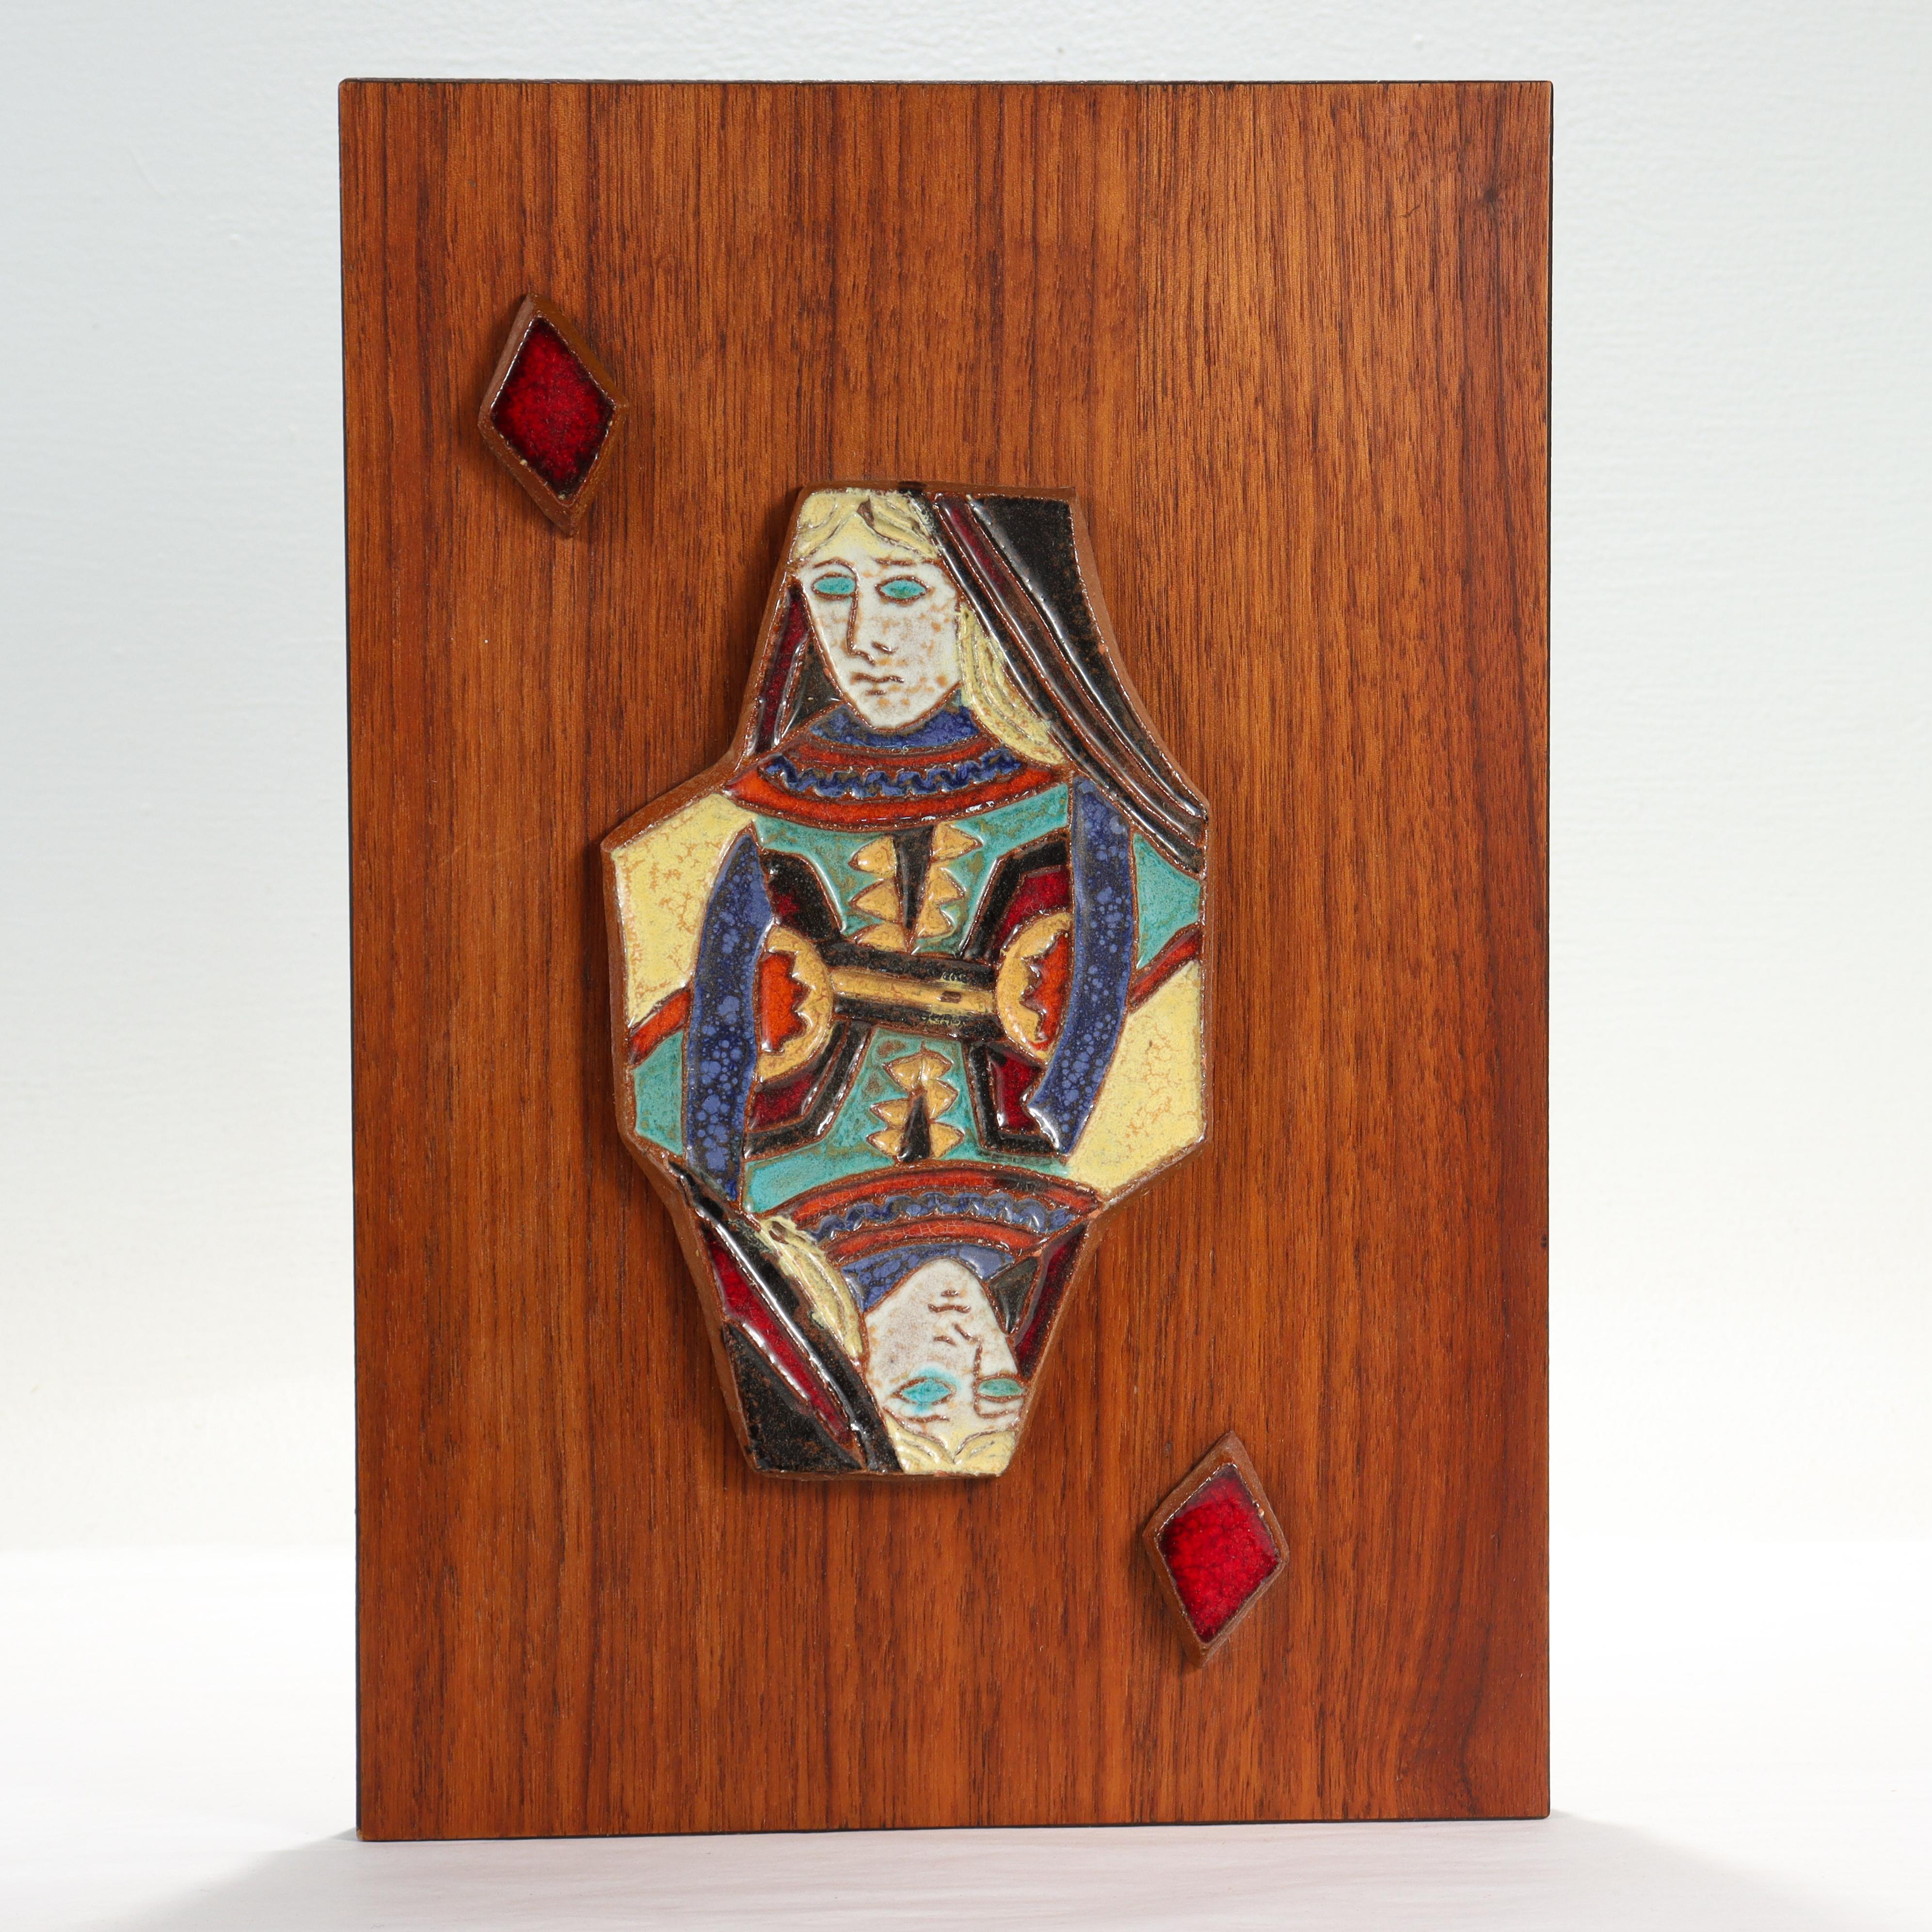 Eine schöne Mid-Century Modern Keramikfliese.

Von Harris Strong. 

Mit einer Terrakotta-Keramikfliese, die die Diamantenkönigin darstellt, auf einer mit Teakholz furnierten Platte.

Einfach ein tolles Plättchen für jeden Fan von